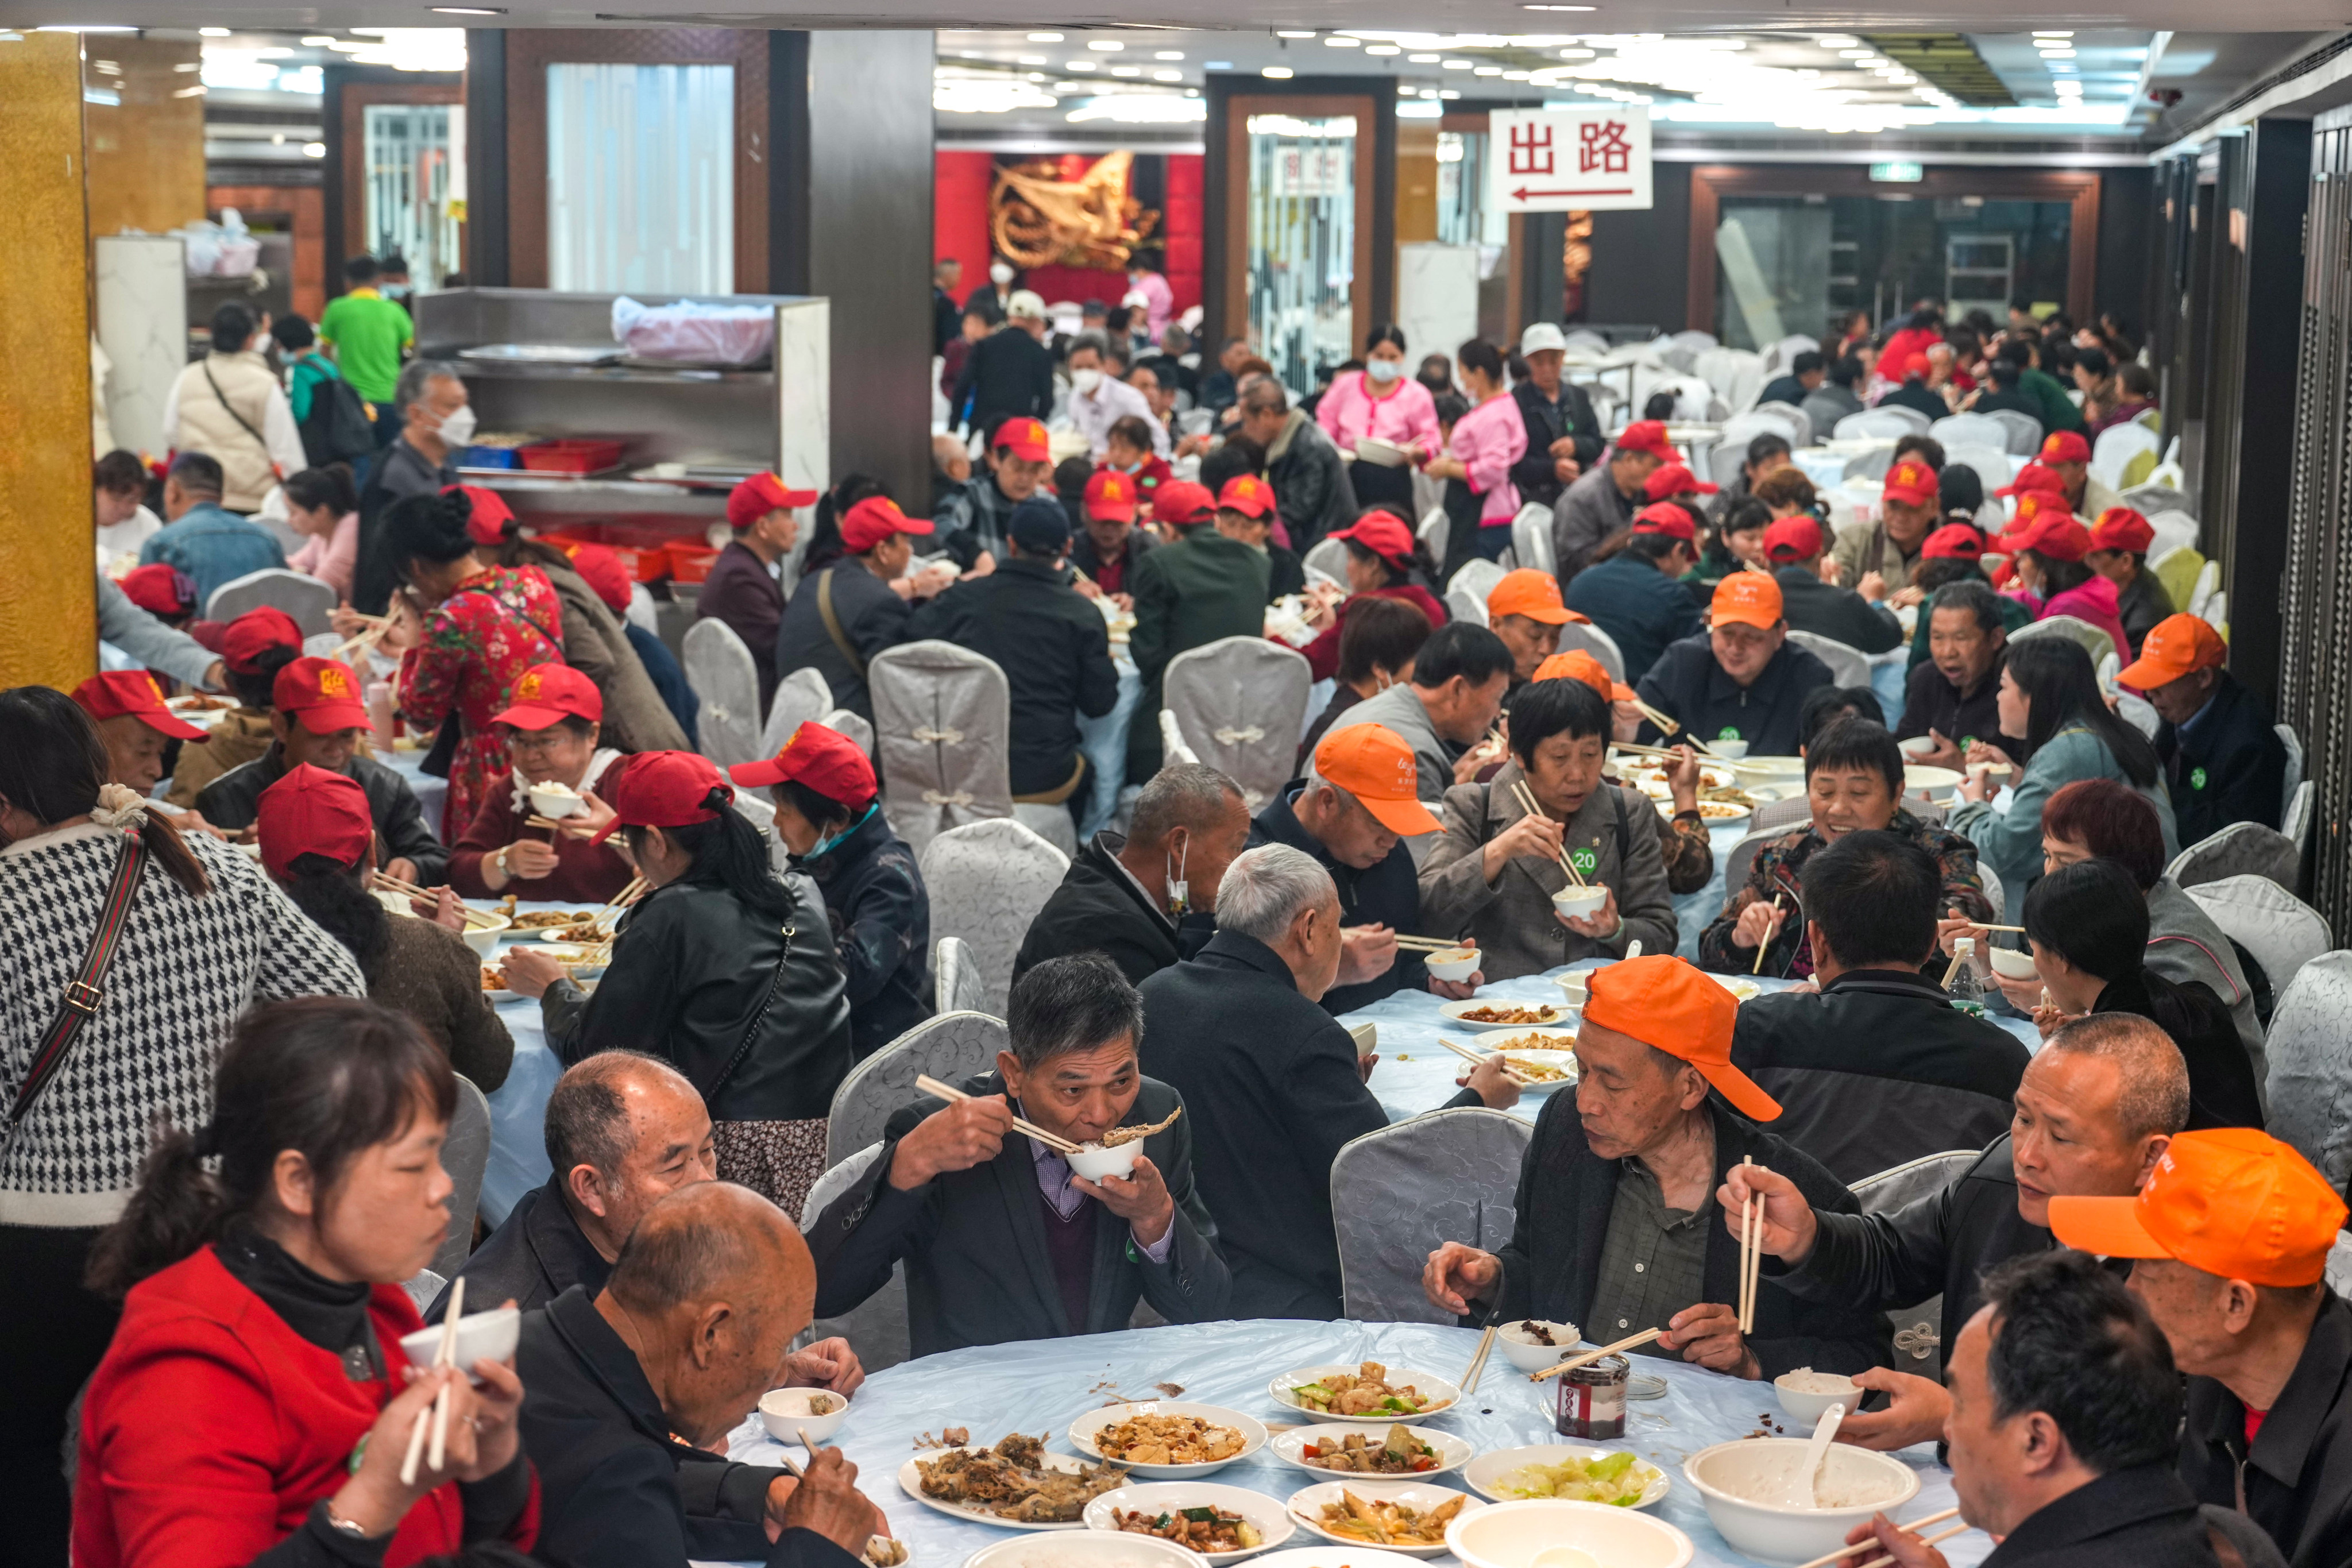 Mainland tourist groups dine at a Hong Kong restaurant. Photo: Sam Tsang